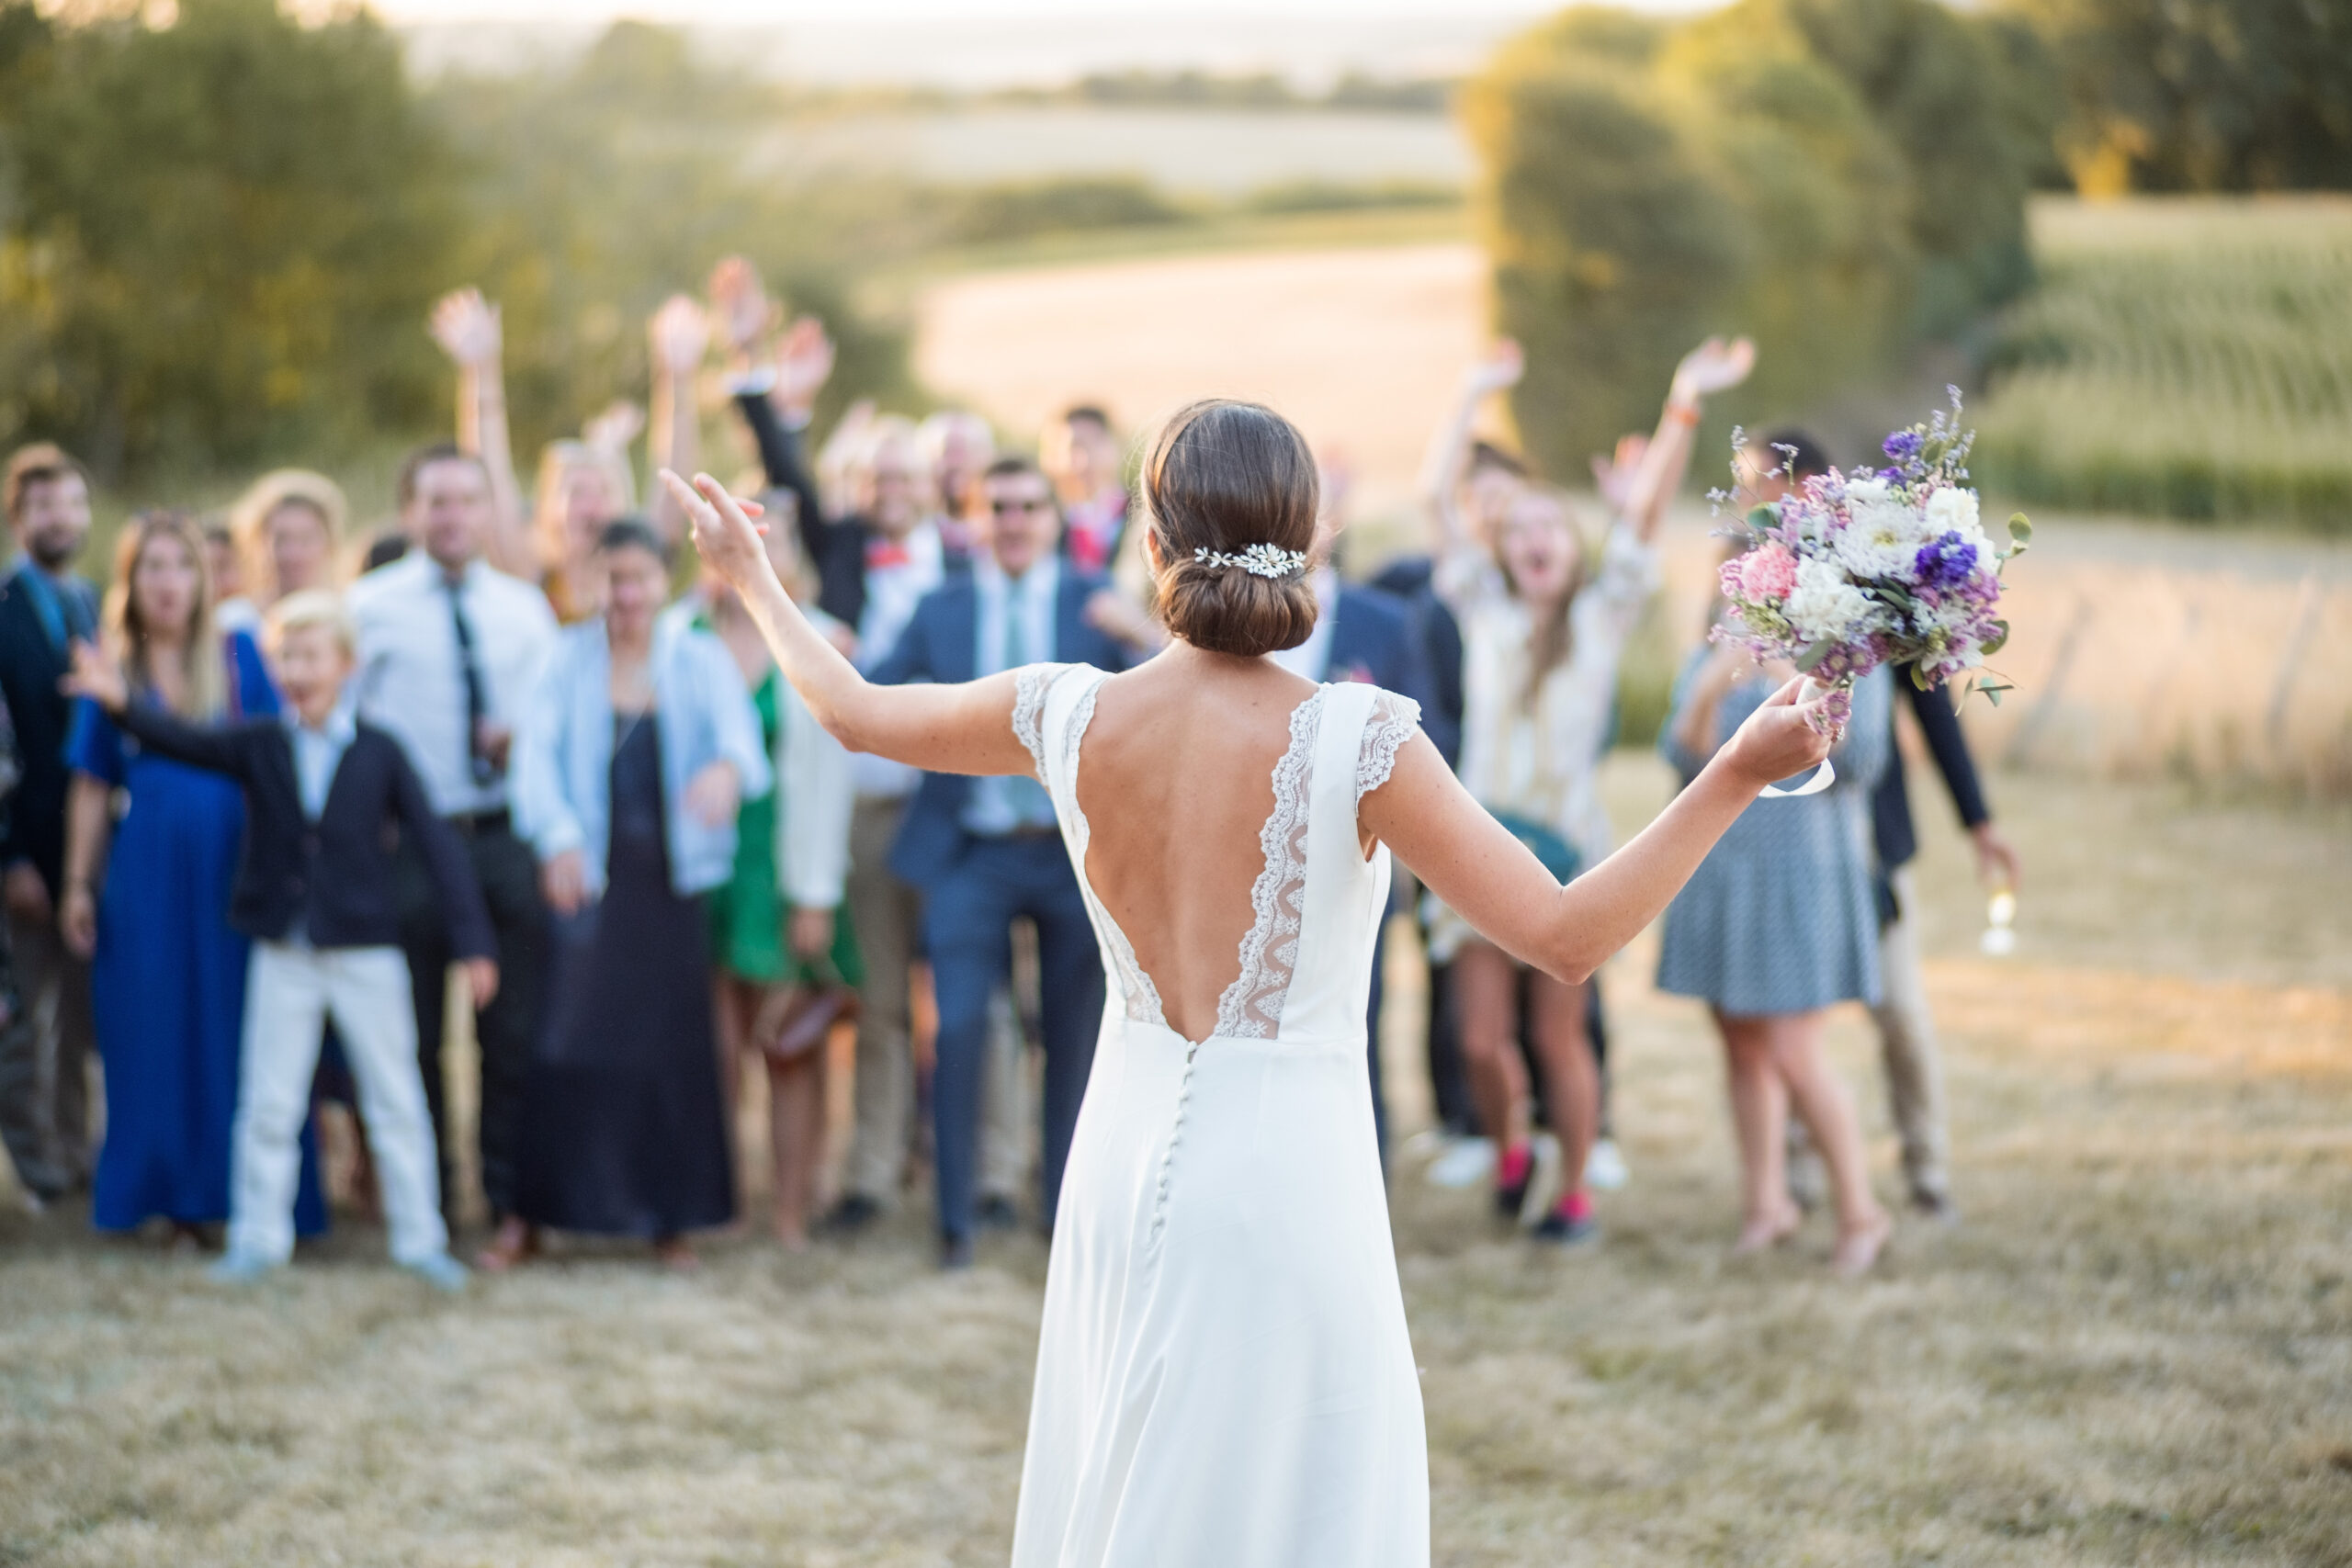 Une mariée de dos qui s'apprête à jeter le bouquet de fleurs qu'elle tient dans sa main droite, avec en fond une foule de gens prêt à le récupérer